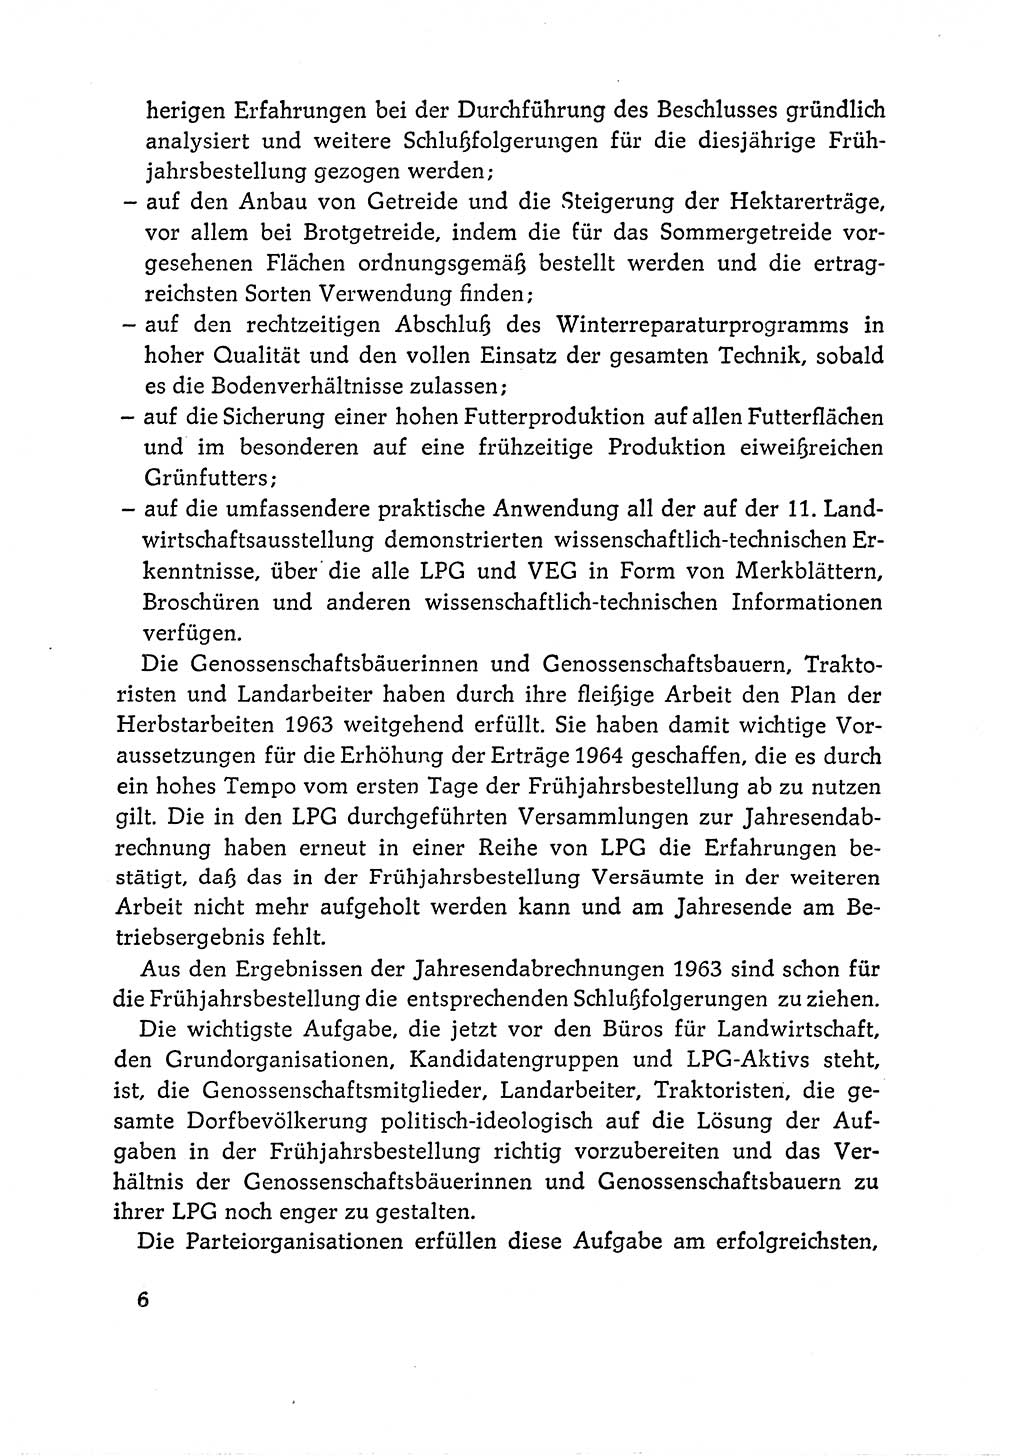 Dokumente der Sozialistischen Einheitspartei Deutschlands (SED) [Deutsche Demokratische Republik (DDR)] 1964-1965, Seite 6 (Dok. SED DDR 1964-1965, S. 6)